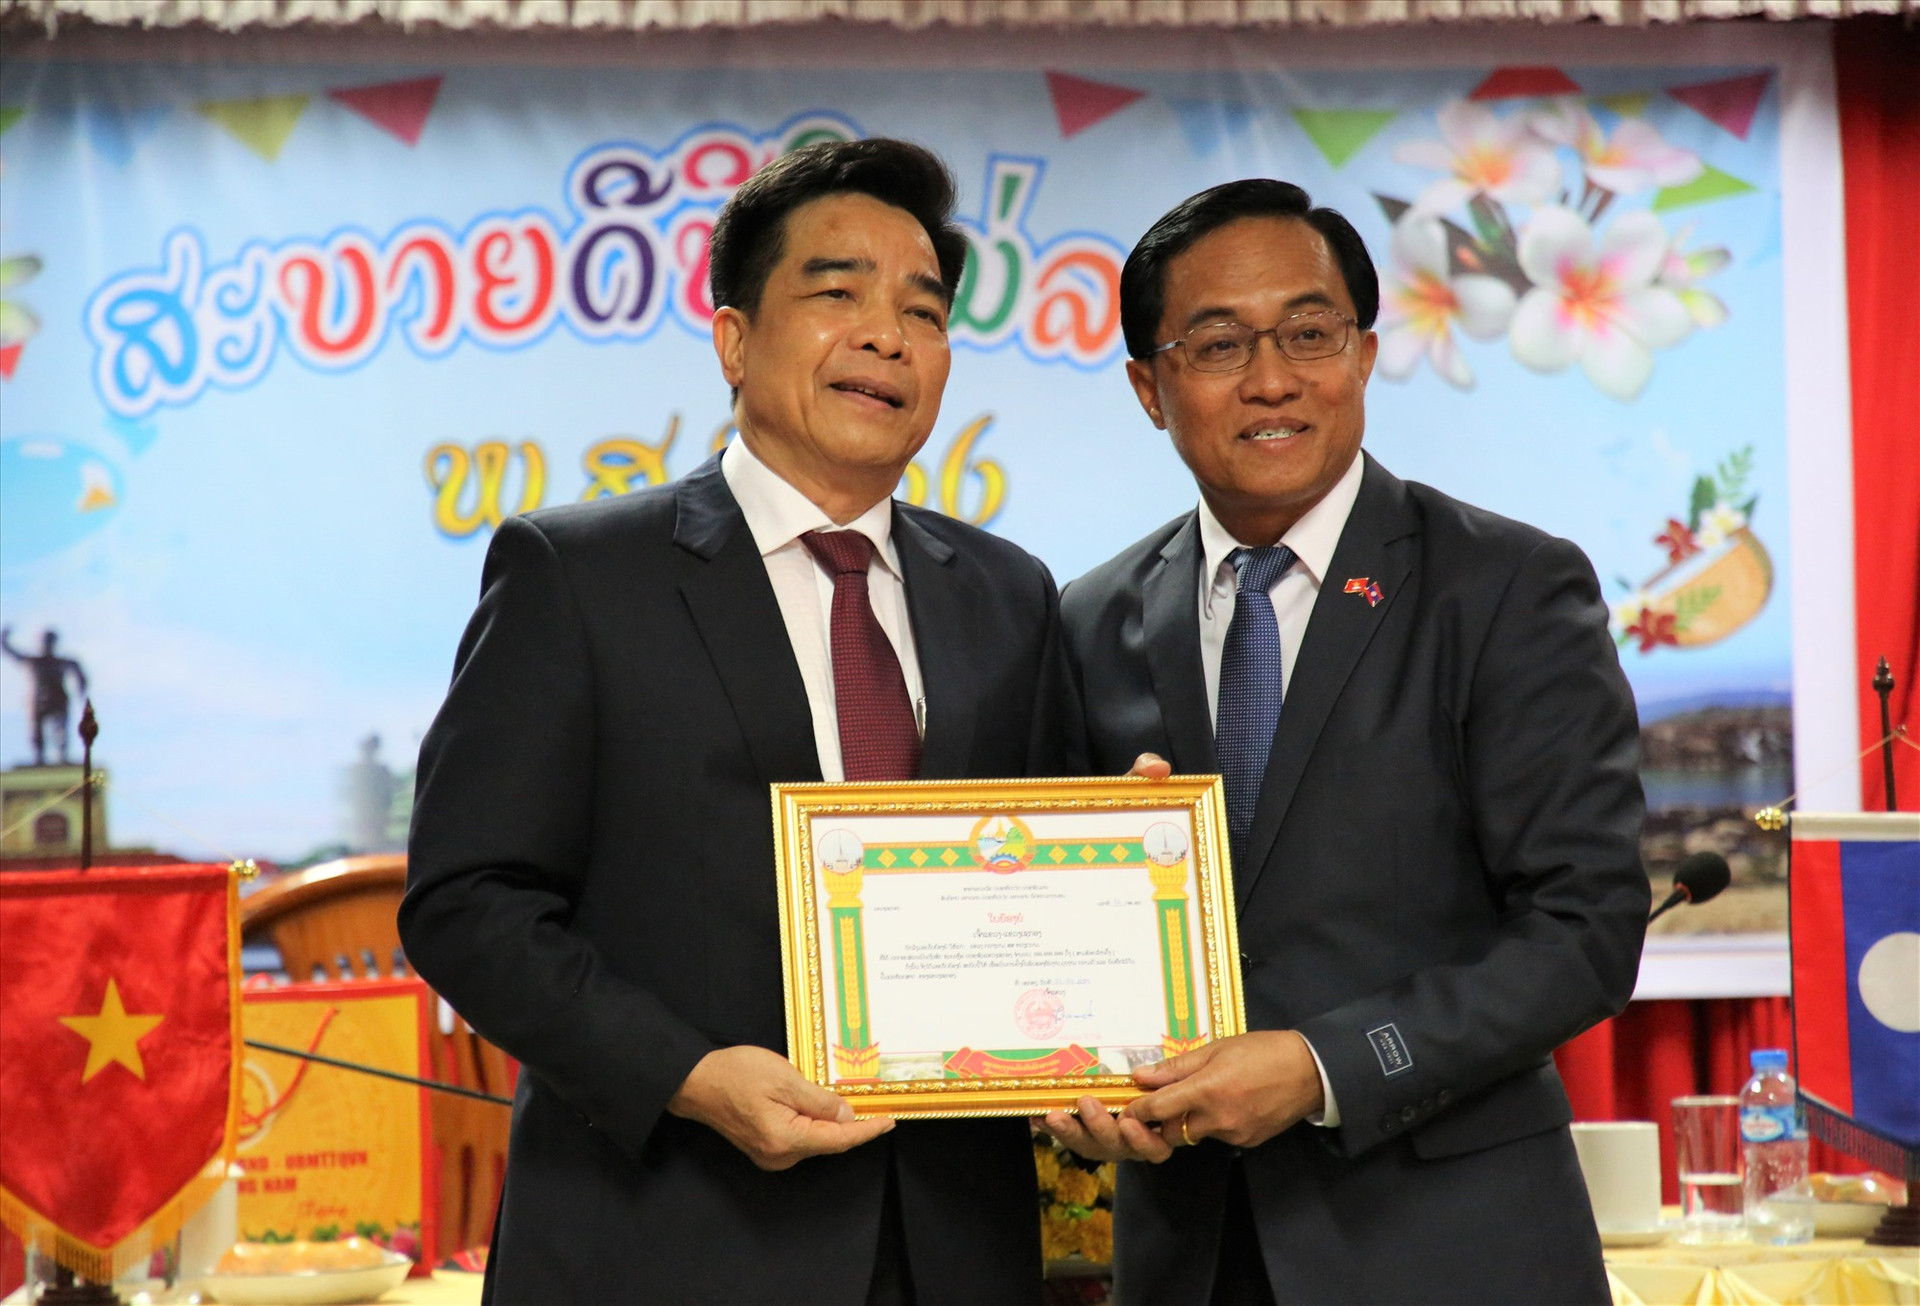 Bí thư, Tỉnh trưởng Sê Kông trao giấy khen ghi nhận tấm lòng của Đảng bộ, chính quyền tỉnh Quảng Nam. Ảnh: A.N